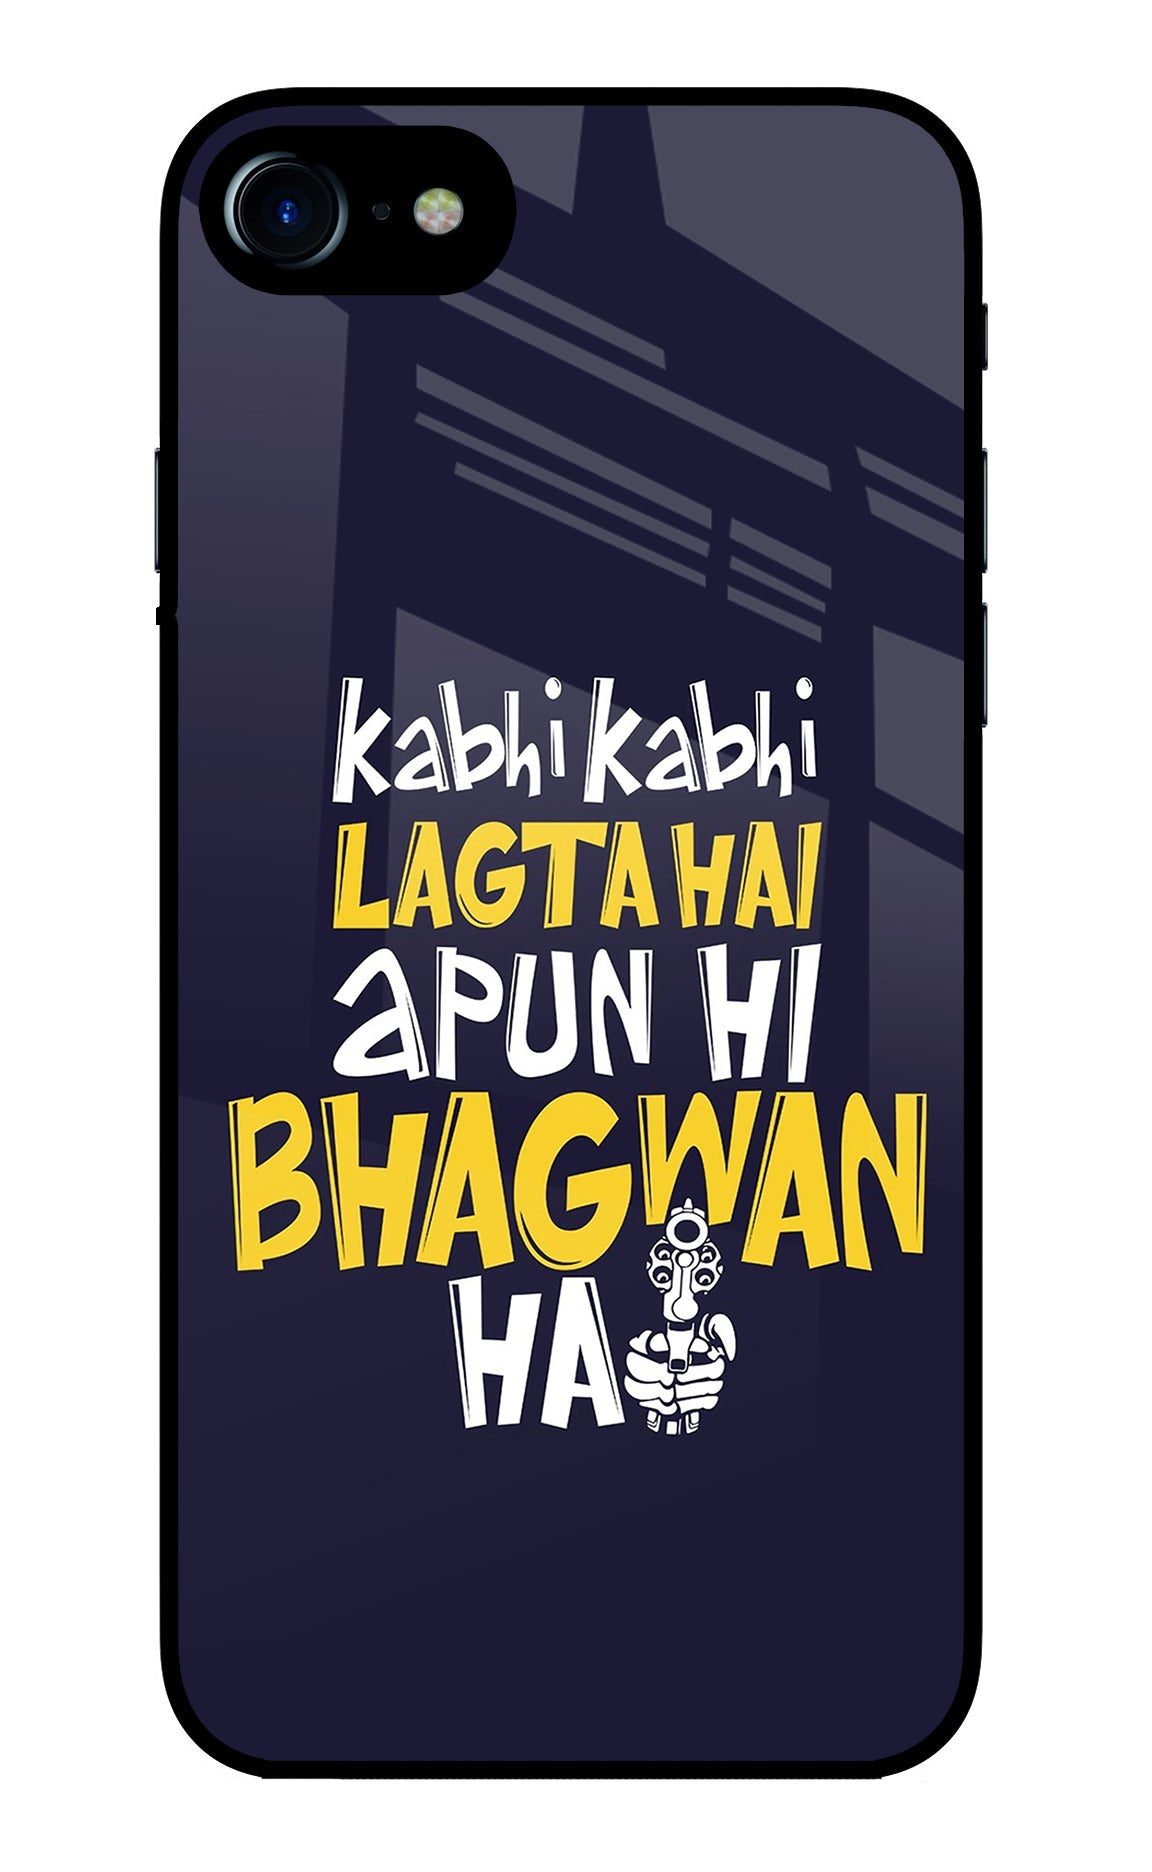 Kabhi Kabhi Lagta Hai Apun Hi Bhagwan Hai iPhone 8/SE 2020 Glass Case